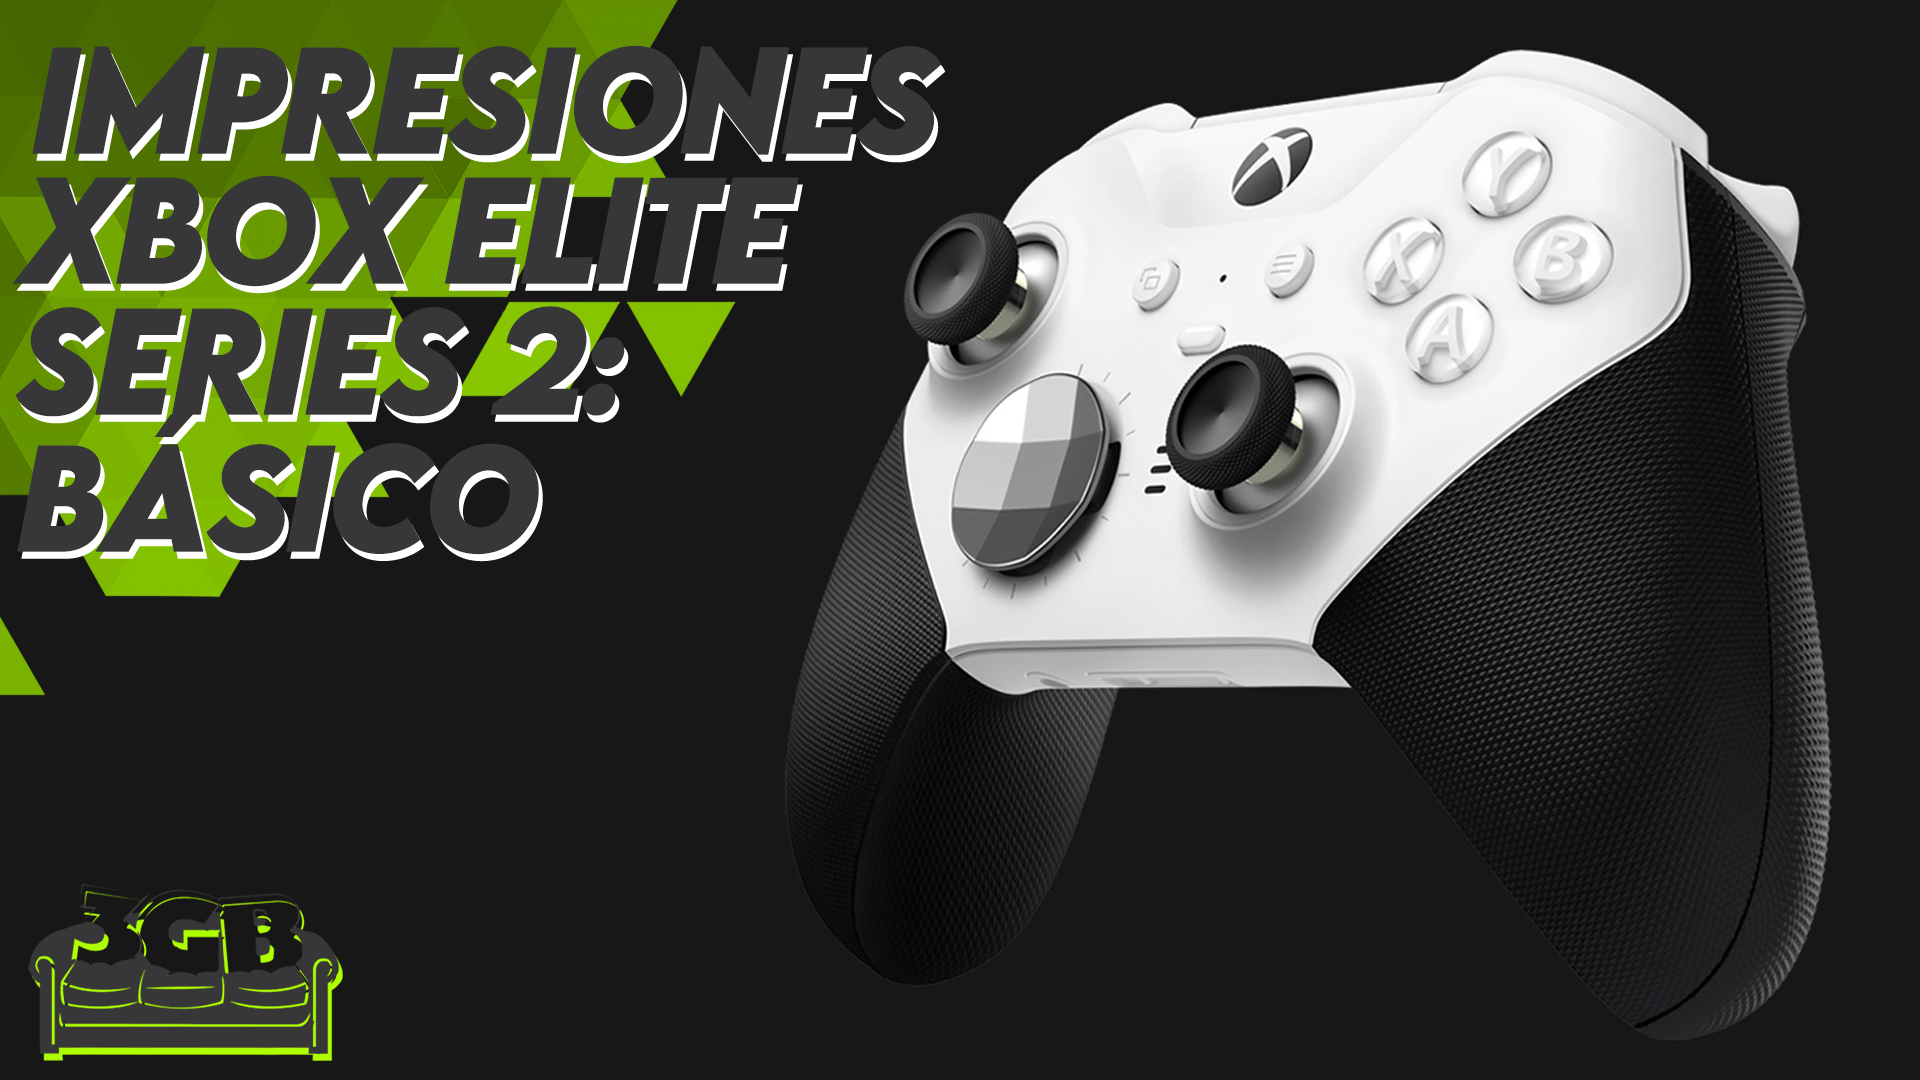 Impresiones Control inalámbrico Xbox Elite Series 2: Básico